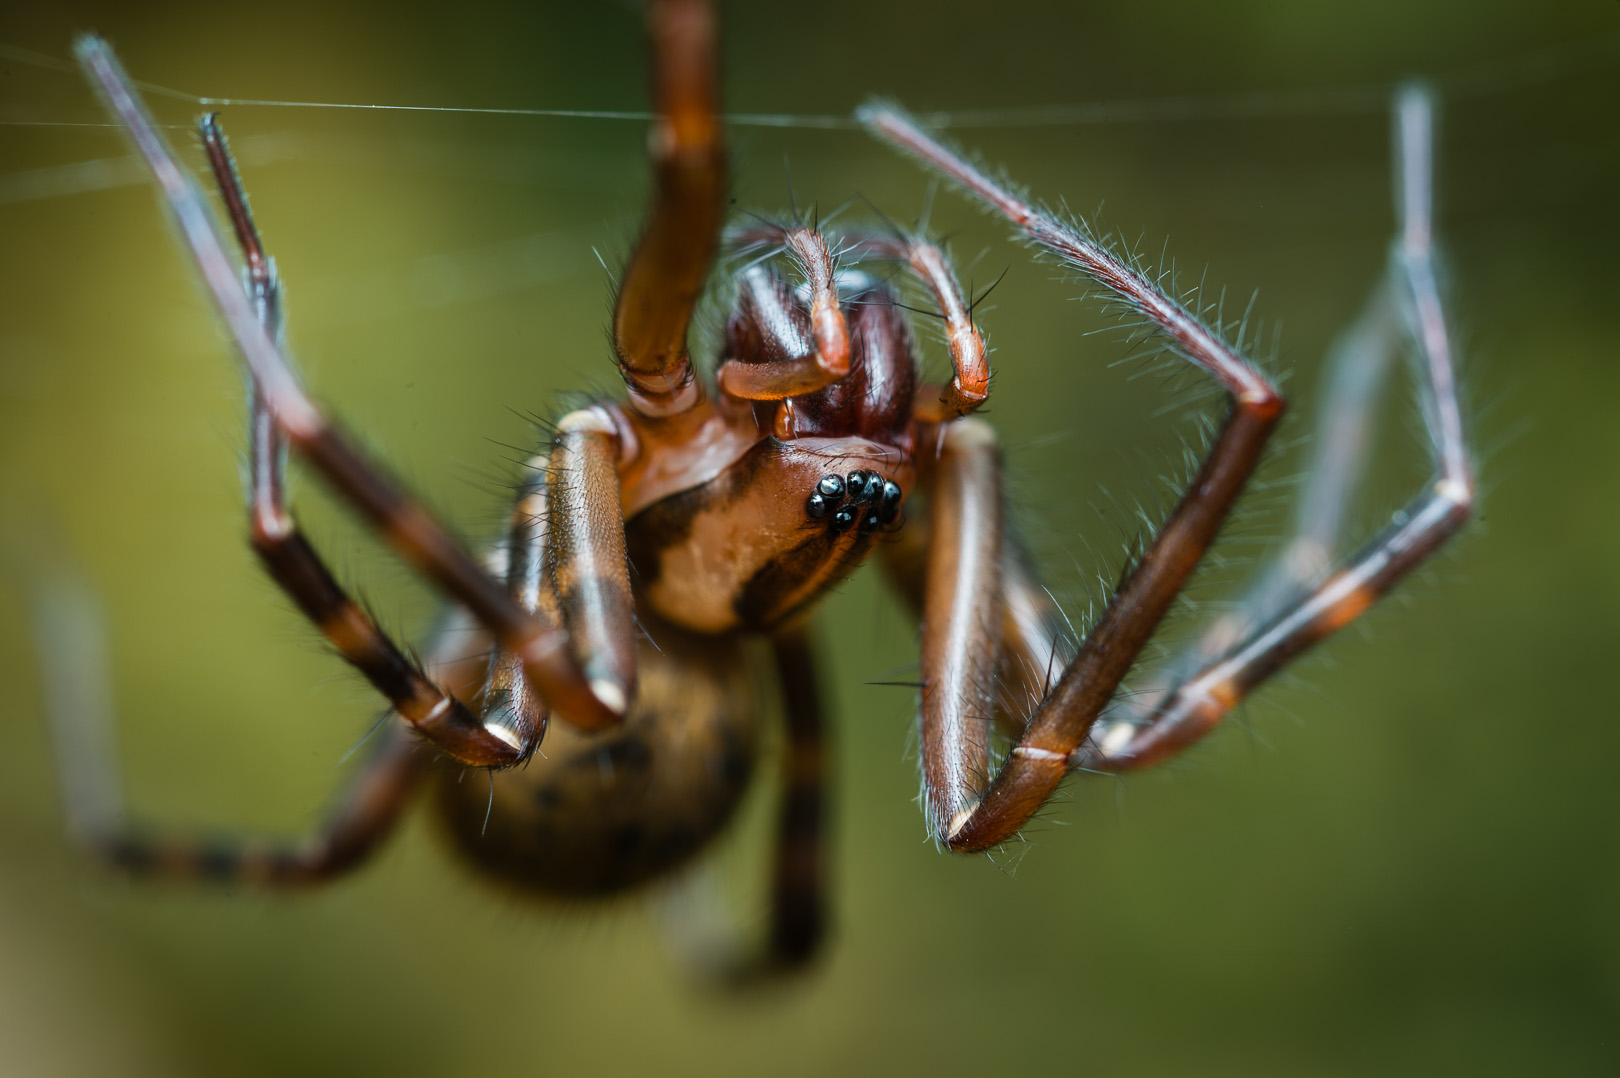 Cambridgea Spider by Craig McKenzie